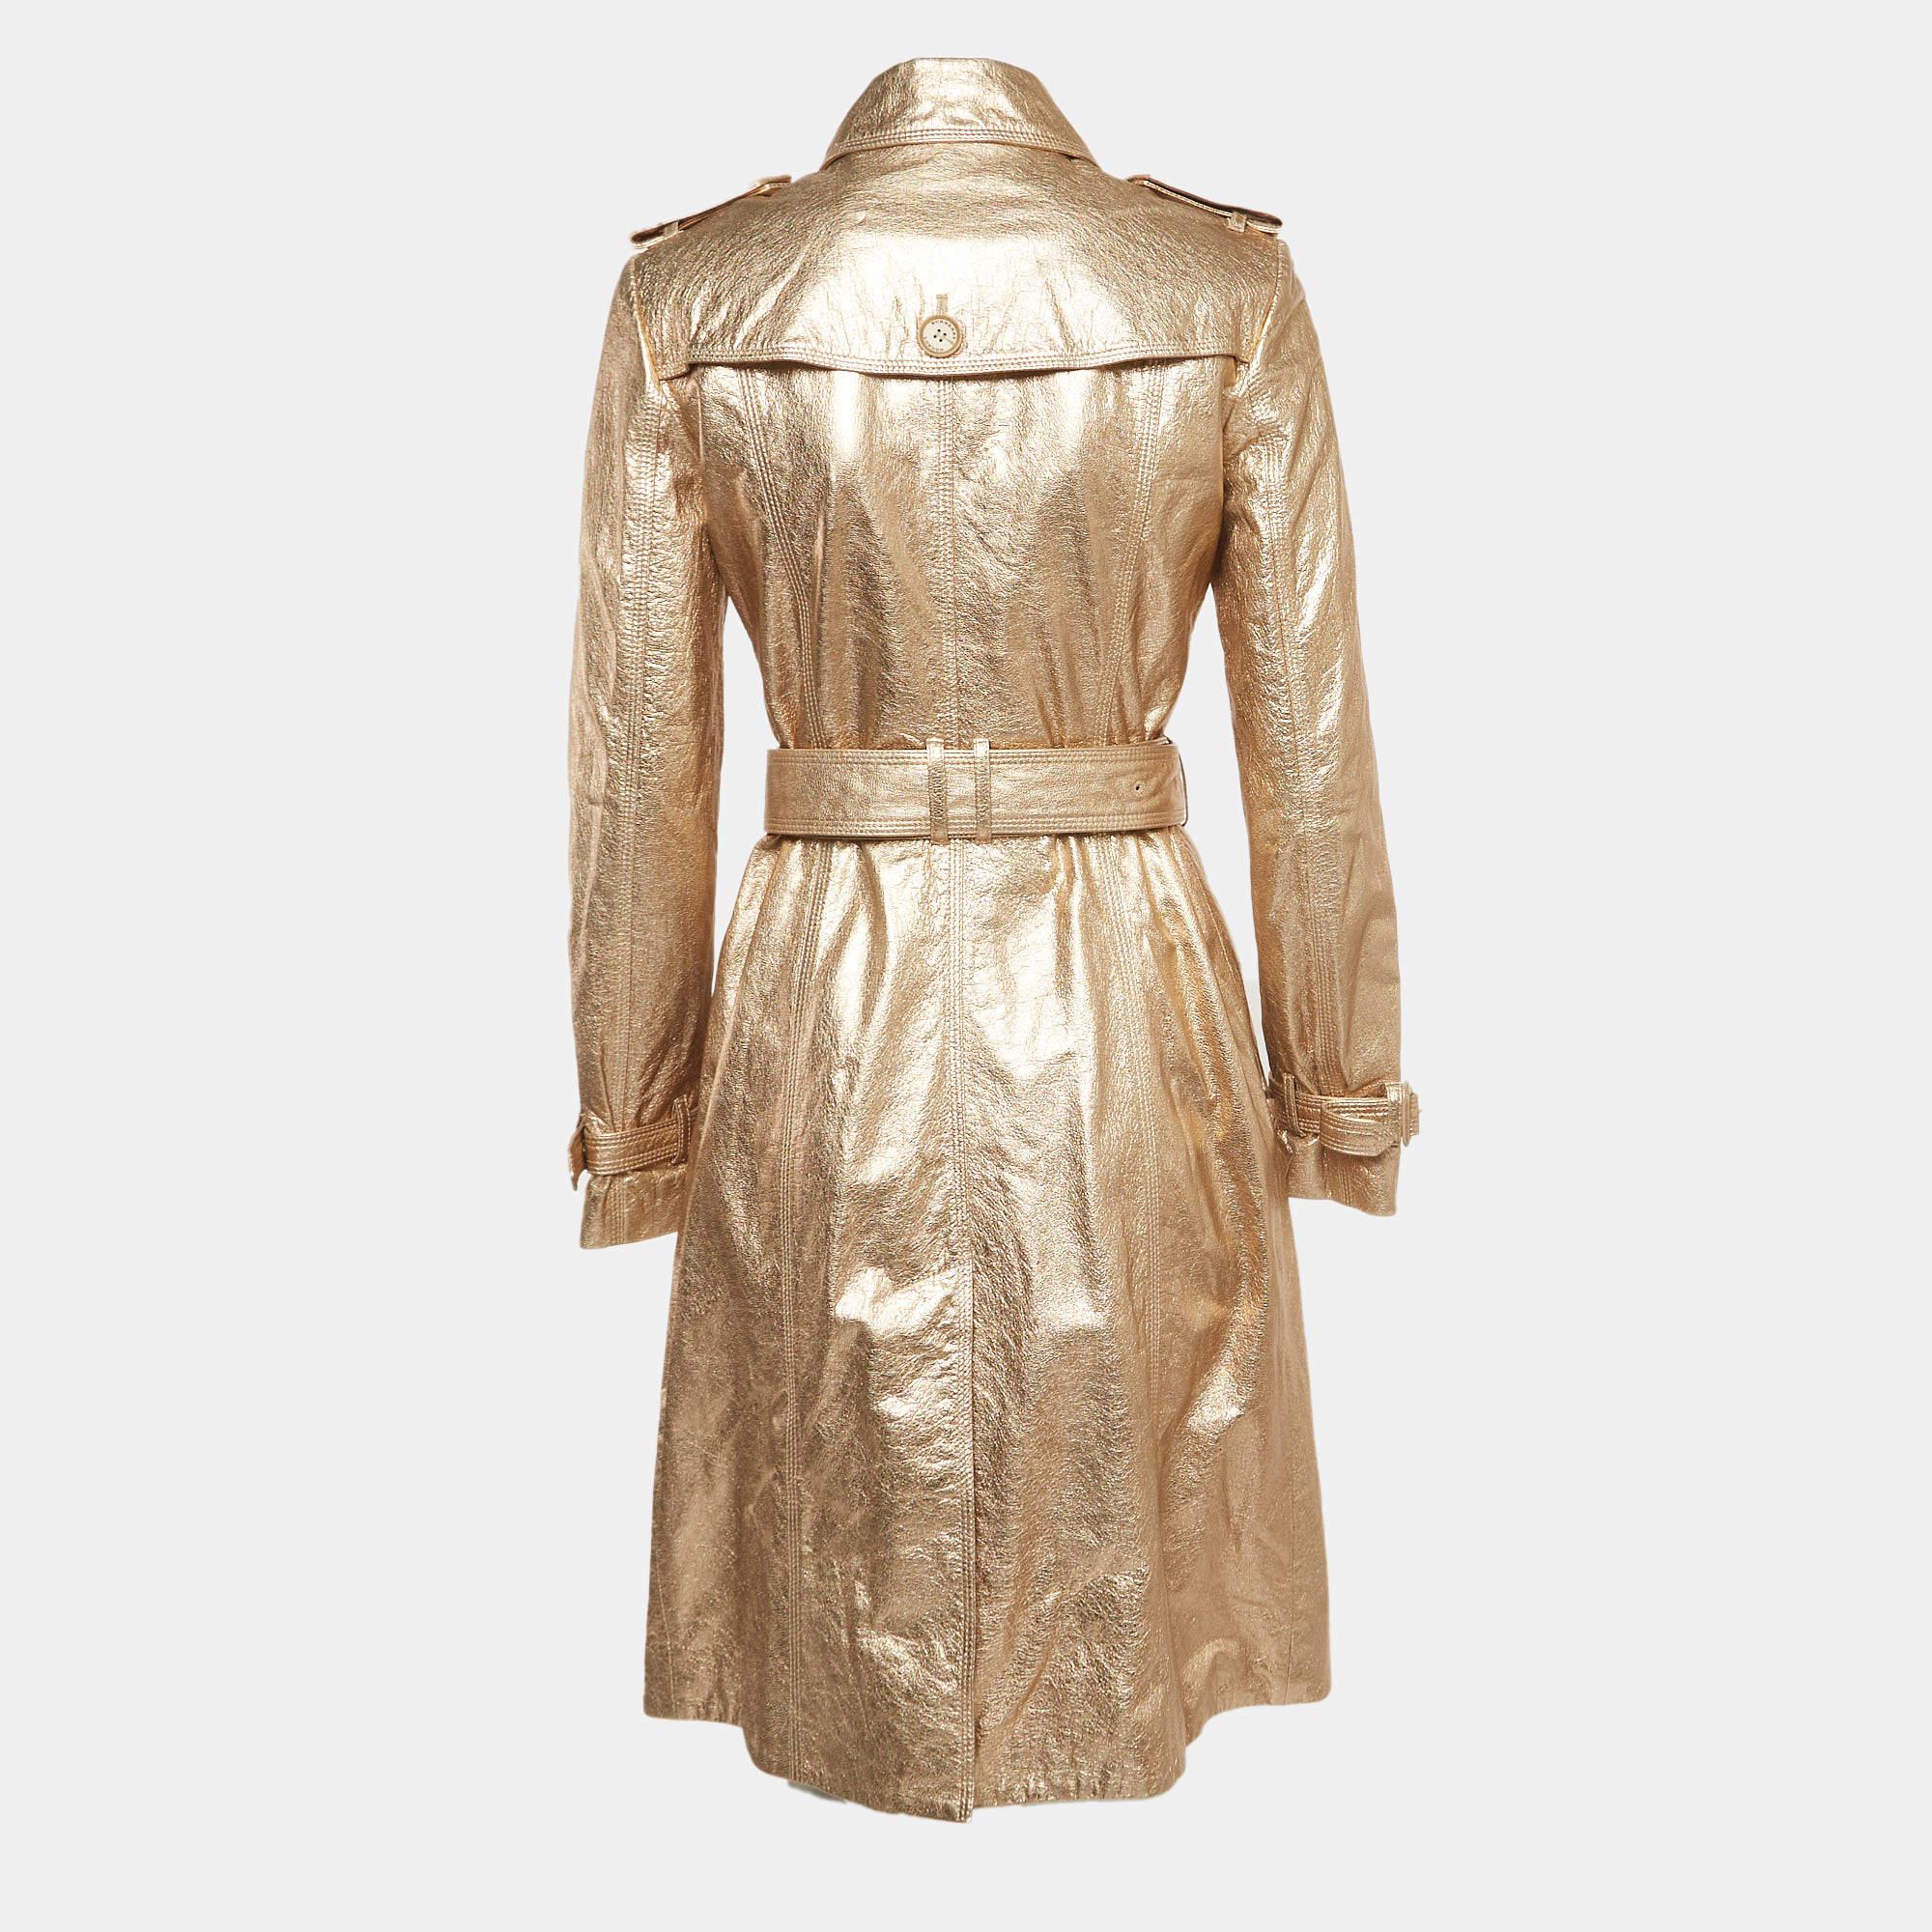 Le manteau Burberry est un vêtement d'extérieur luxueux et élégant. Confectionné en cuir doré de haute qualité, il présente un double boutonnage pour un look classique. Ce manteau respire la sophistication grâce à sa coupe ajustée, sa confection